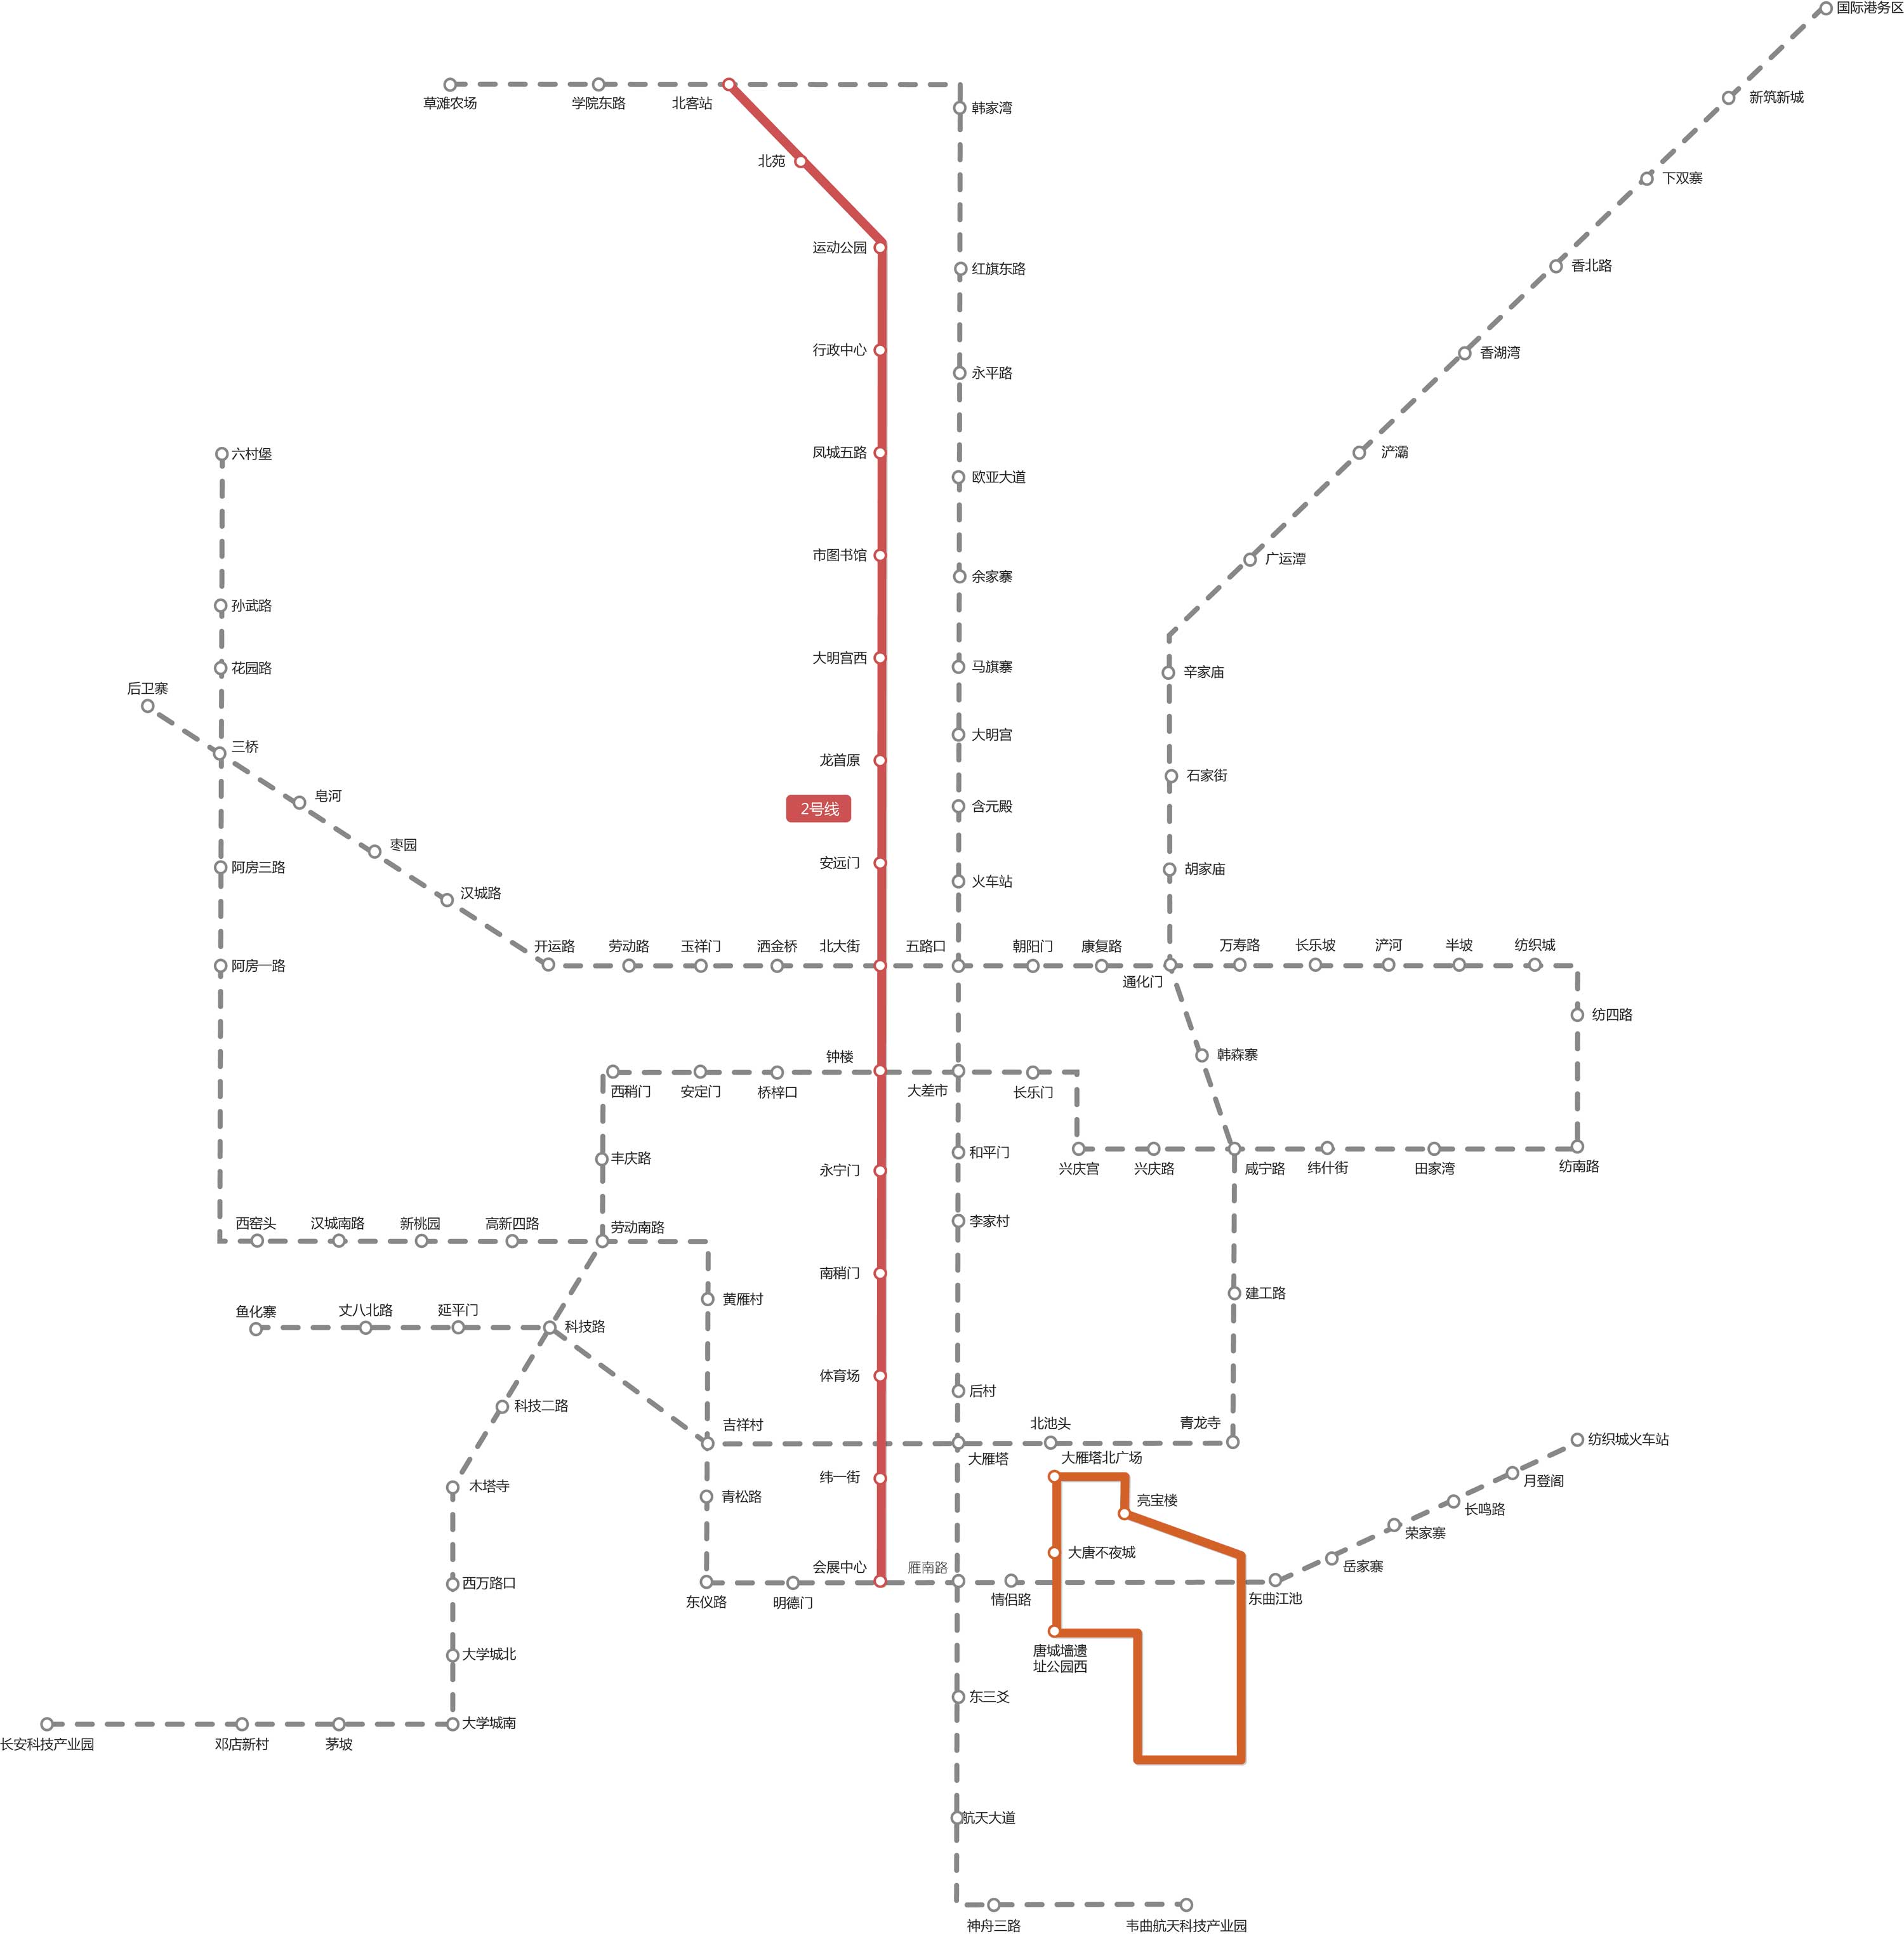 西安地铁线路图(高清)_交通地图库_地图窝图片